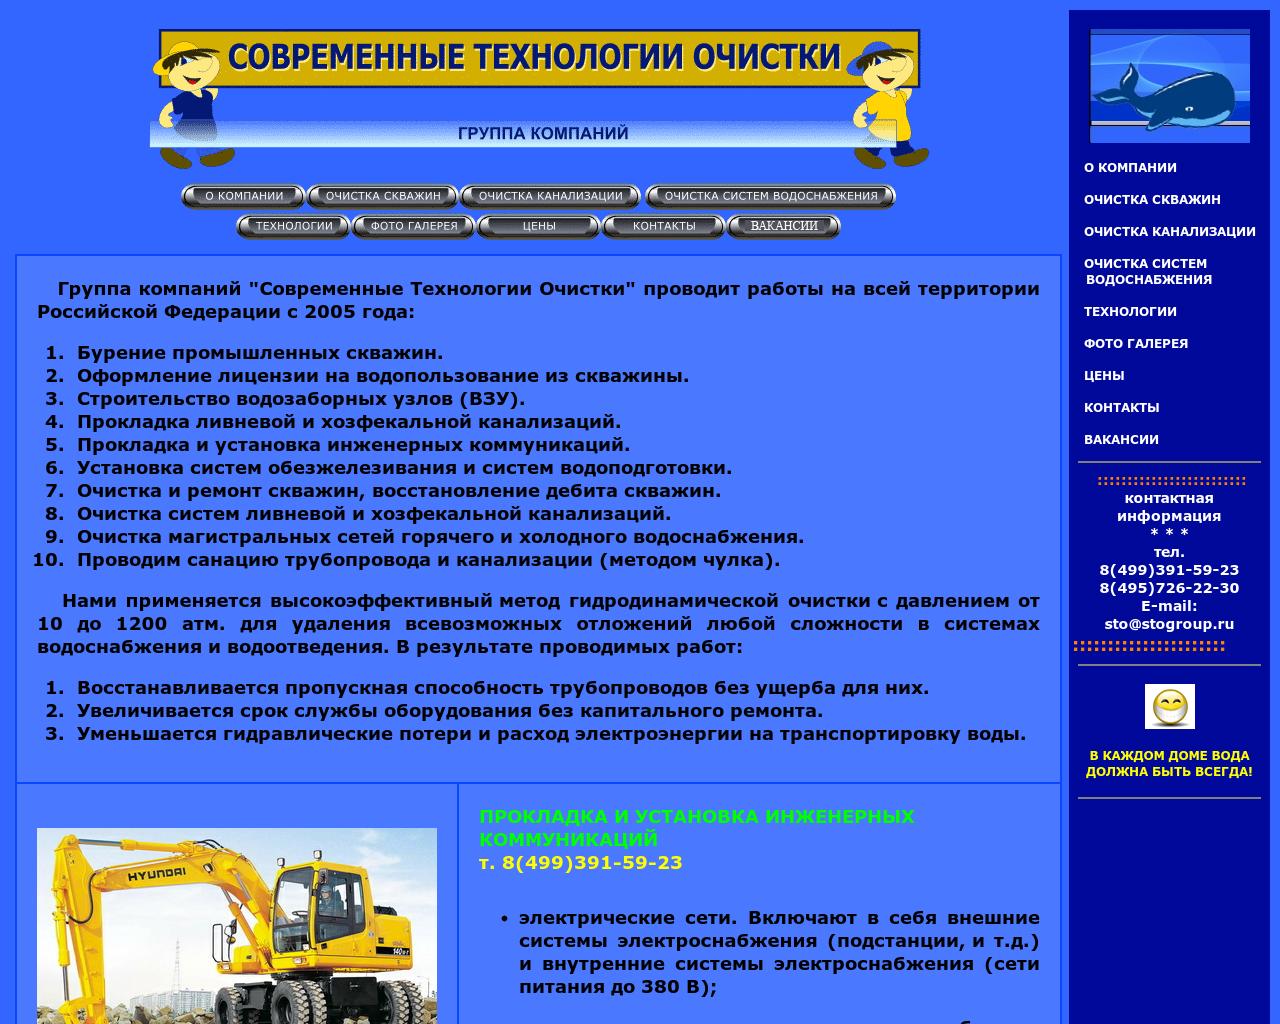 Изображение сайта stogroup.ru в разрешении 1280x1024